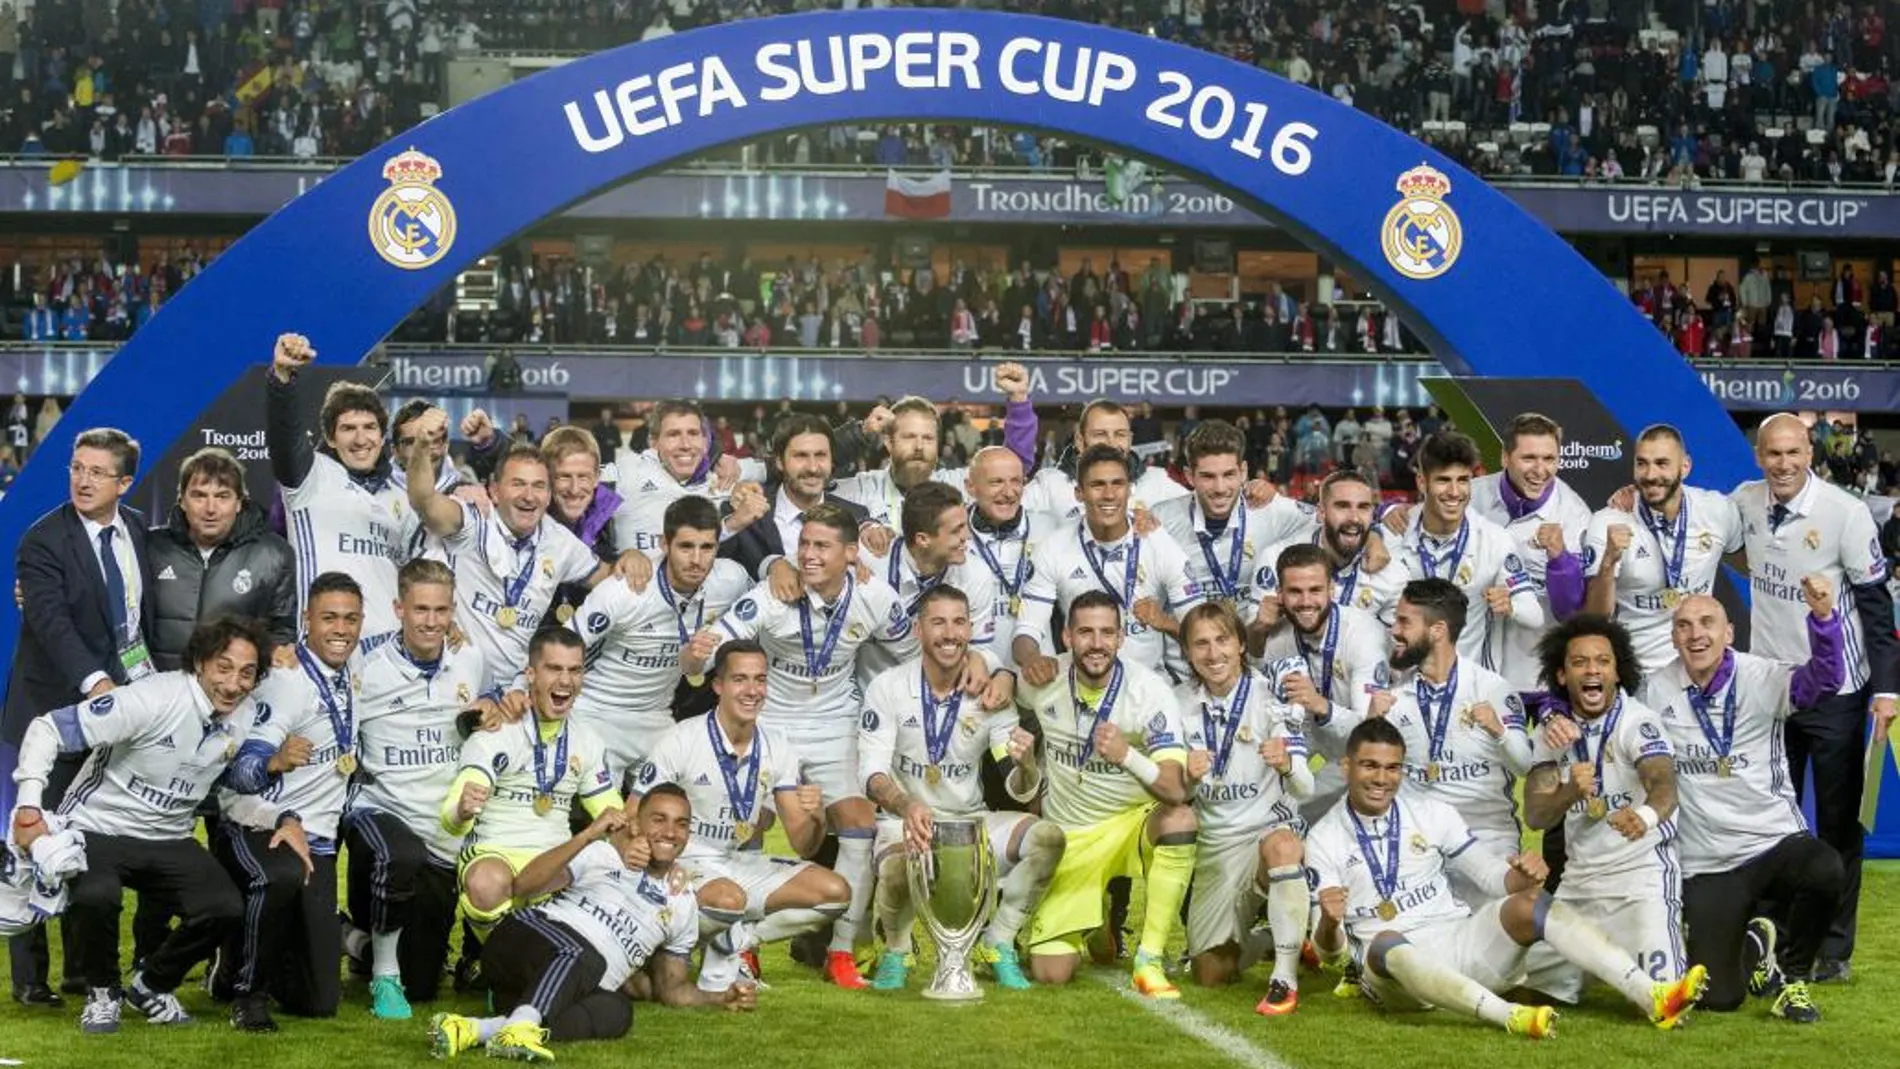 Jugadores del Real Madrid celebran con el trofeo después de vencer al Sevilla hoy, martes 9 de agosto de 2016, durante el partido por la Supercopa de Europa, en el estadio Lerkendal de Trondheim (Noruega).